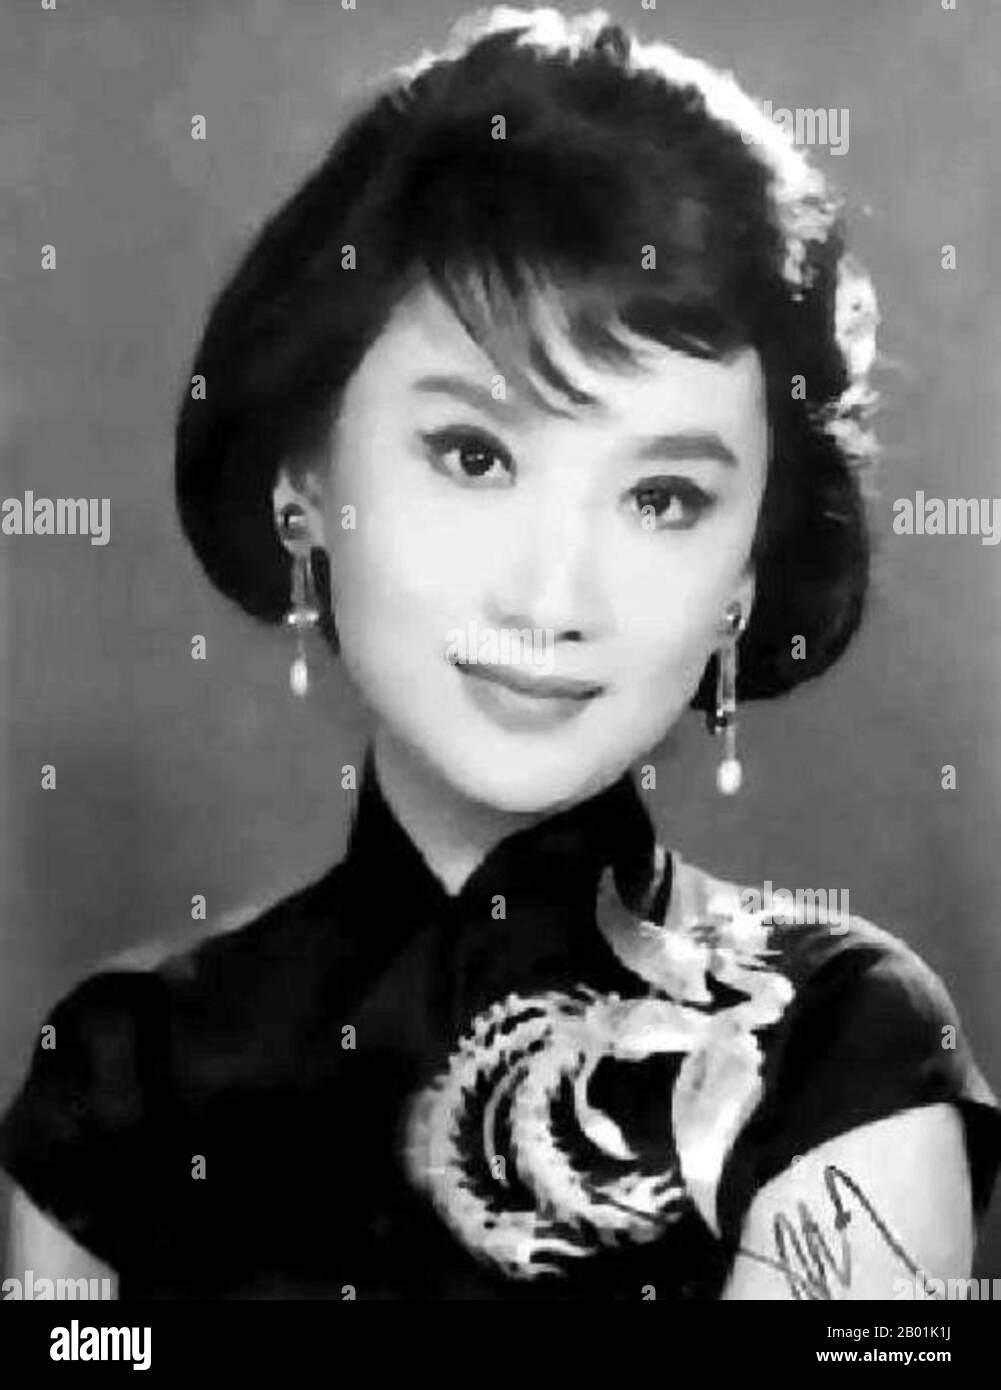 China: Xia Meng (16 February 1933 - 30 October 2016), Hong Kong actress and film producer, c. 1950s.  Xia Meng (a.k.a Hsia Moon or Miranda Yang; born Yang Meng) is a Hong Kong actress and film producer. She was the key figure of Hong Kong's Left Wing Mandarin movie scene. Stock Photo